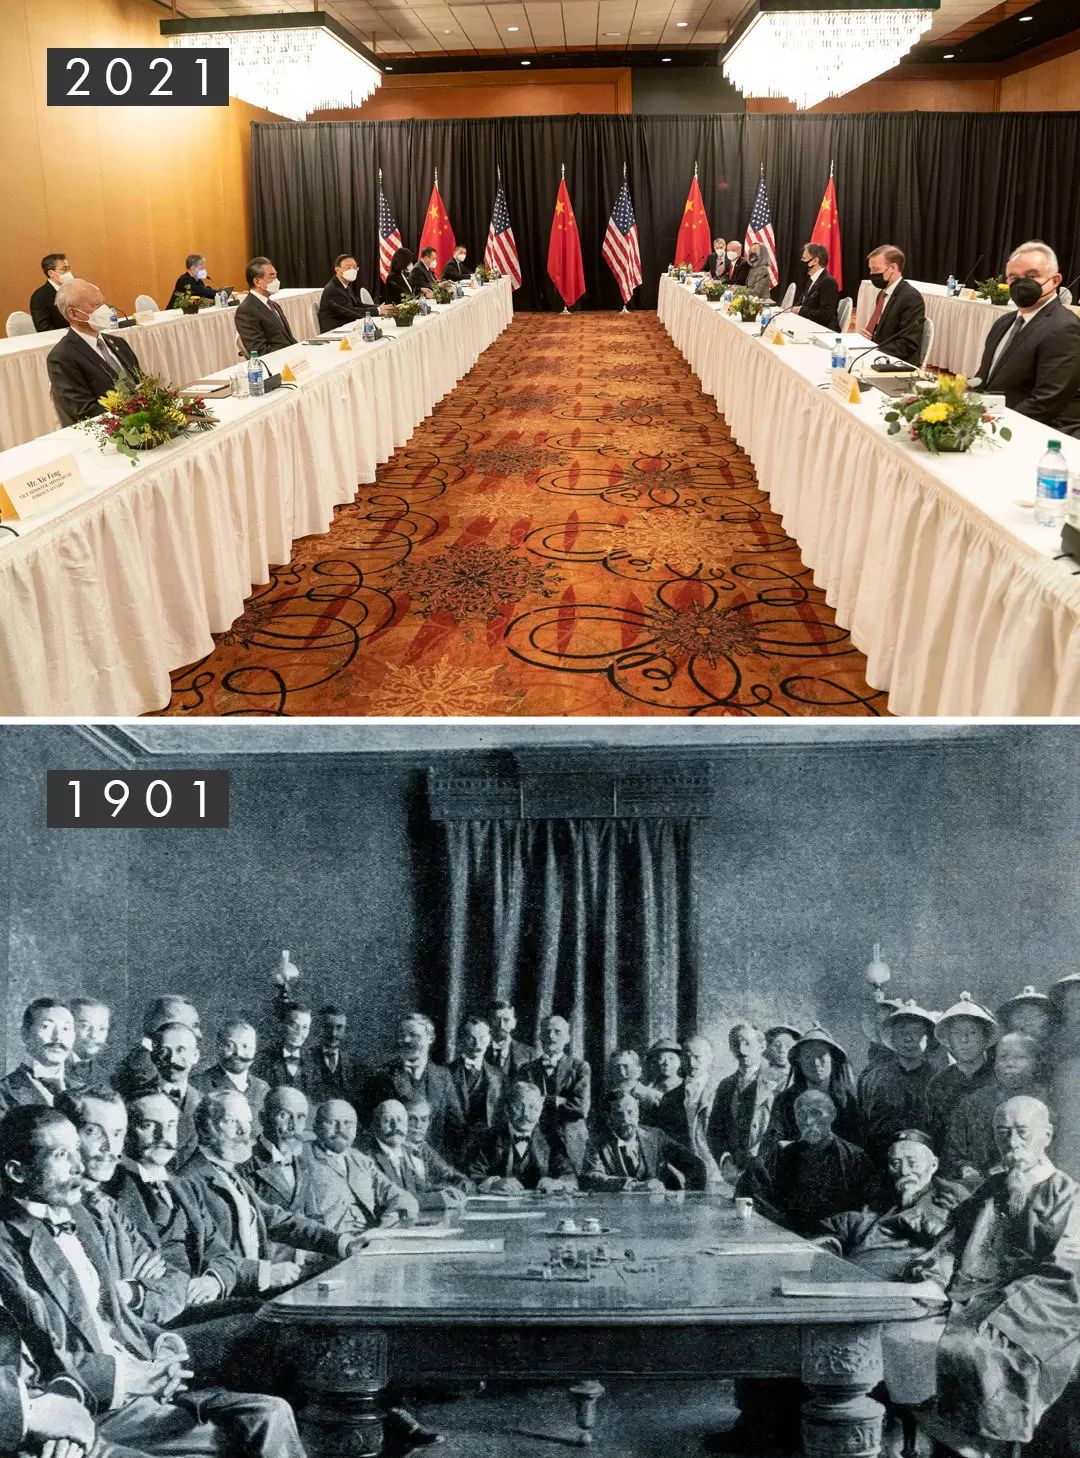 1901辛丑年，清政府与列强签订城下之盟《辛丑条约》；2021辛丑年，中美高层战略对话发出中国强音。